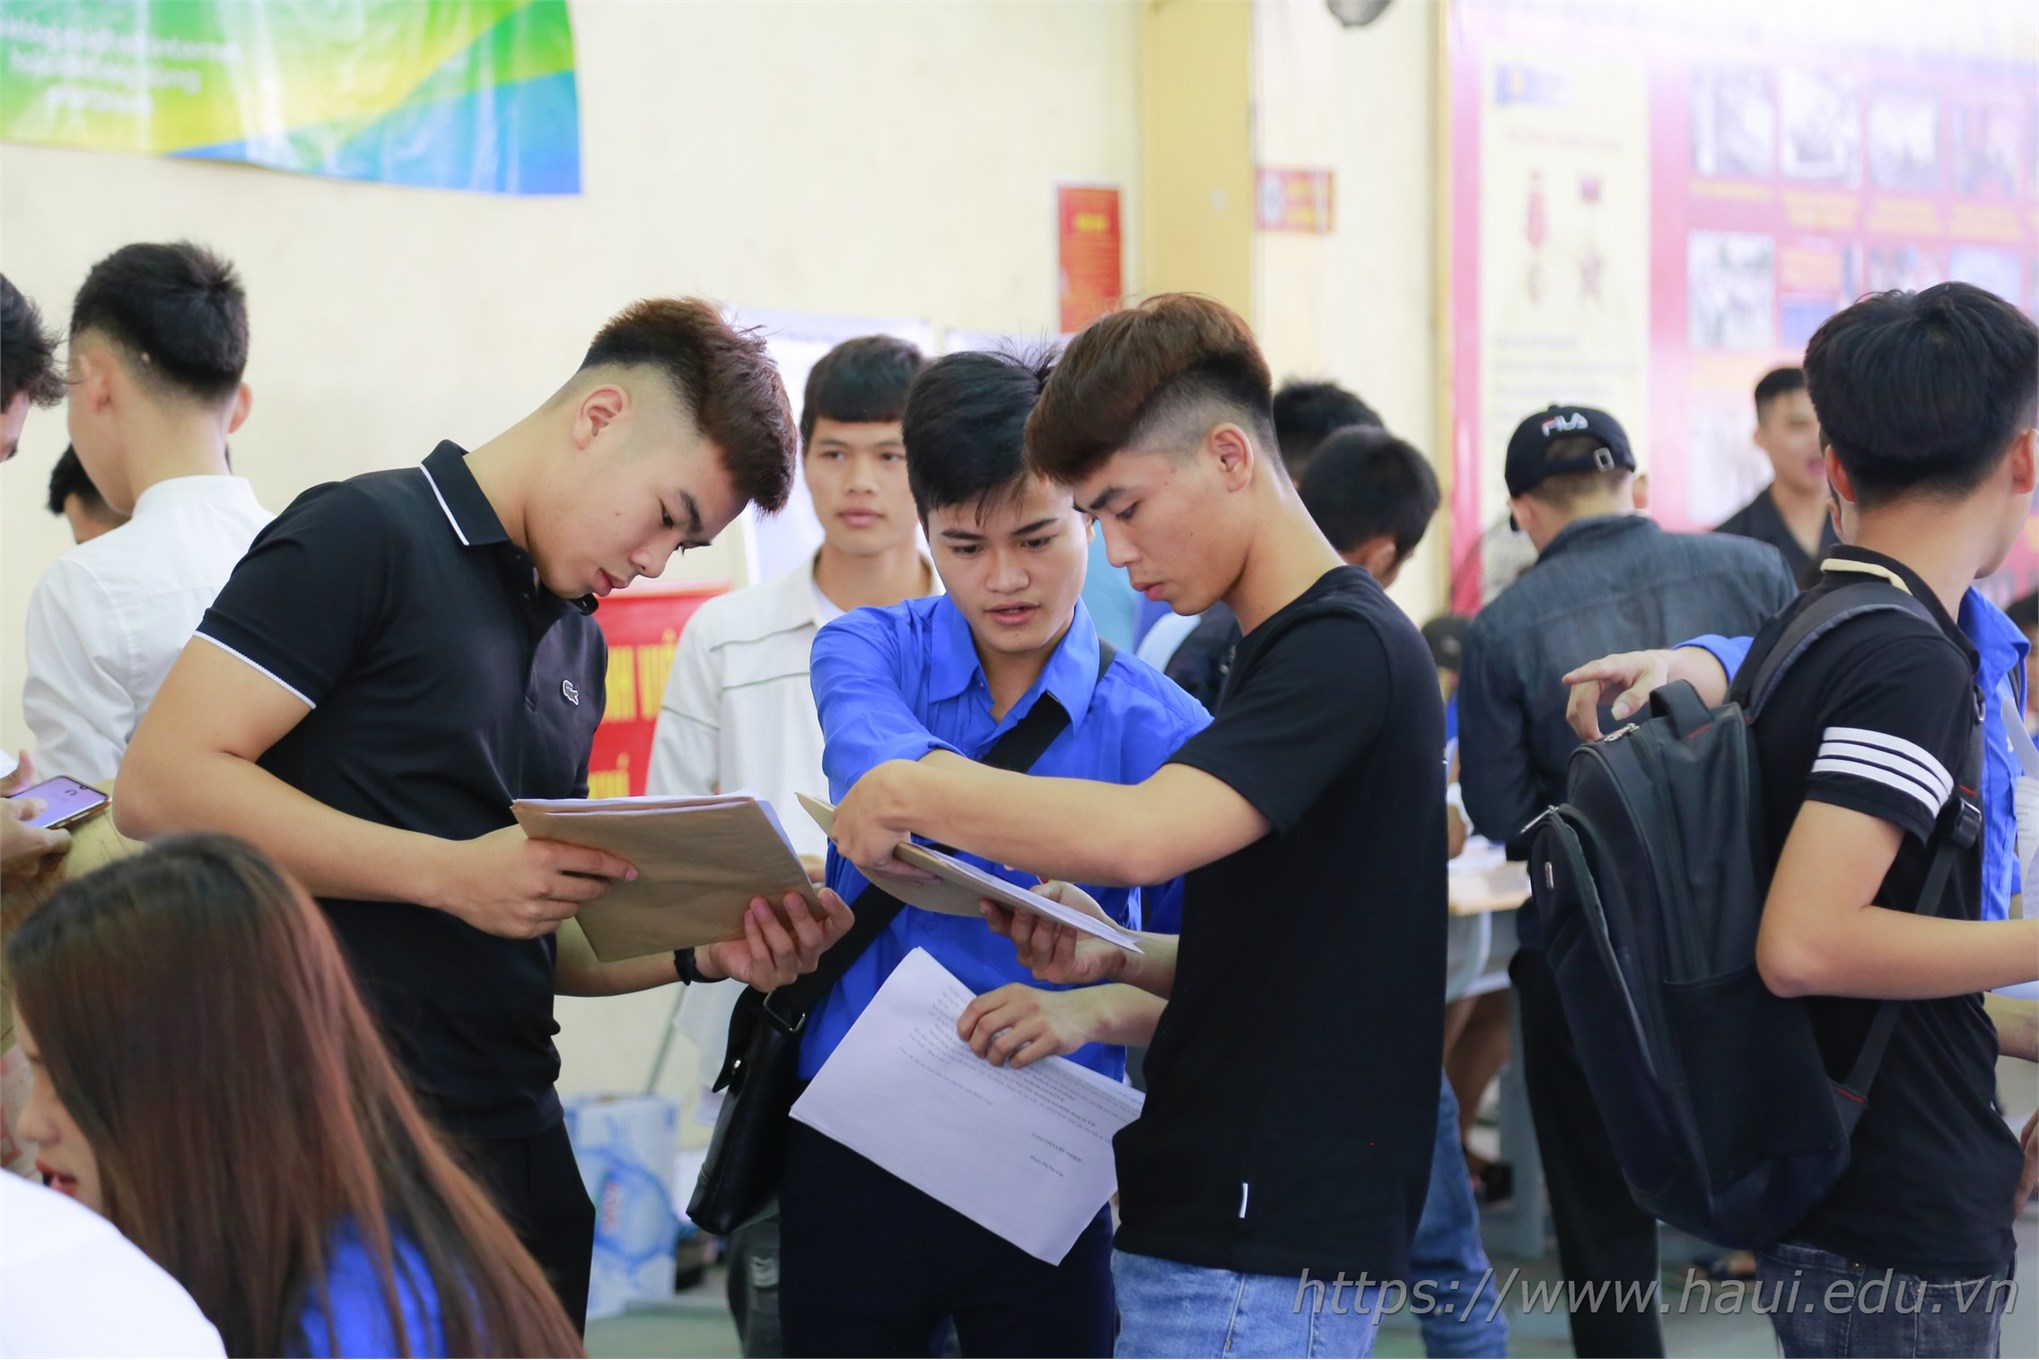 Trung tâm Việt – Nhật tưng bừng chào đón Tân sinh viên hệ cao đẳng K21